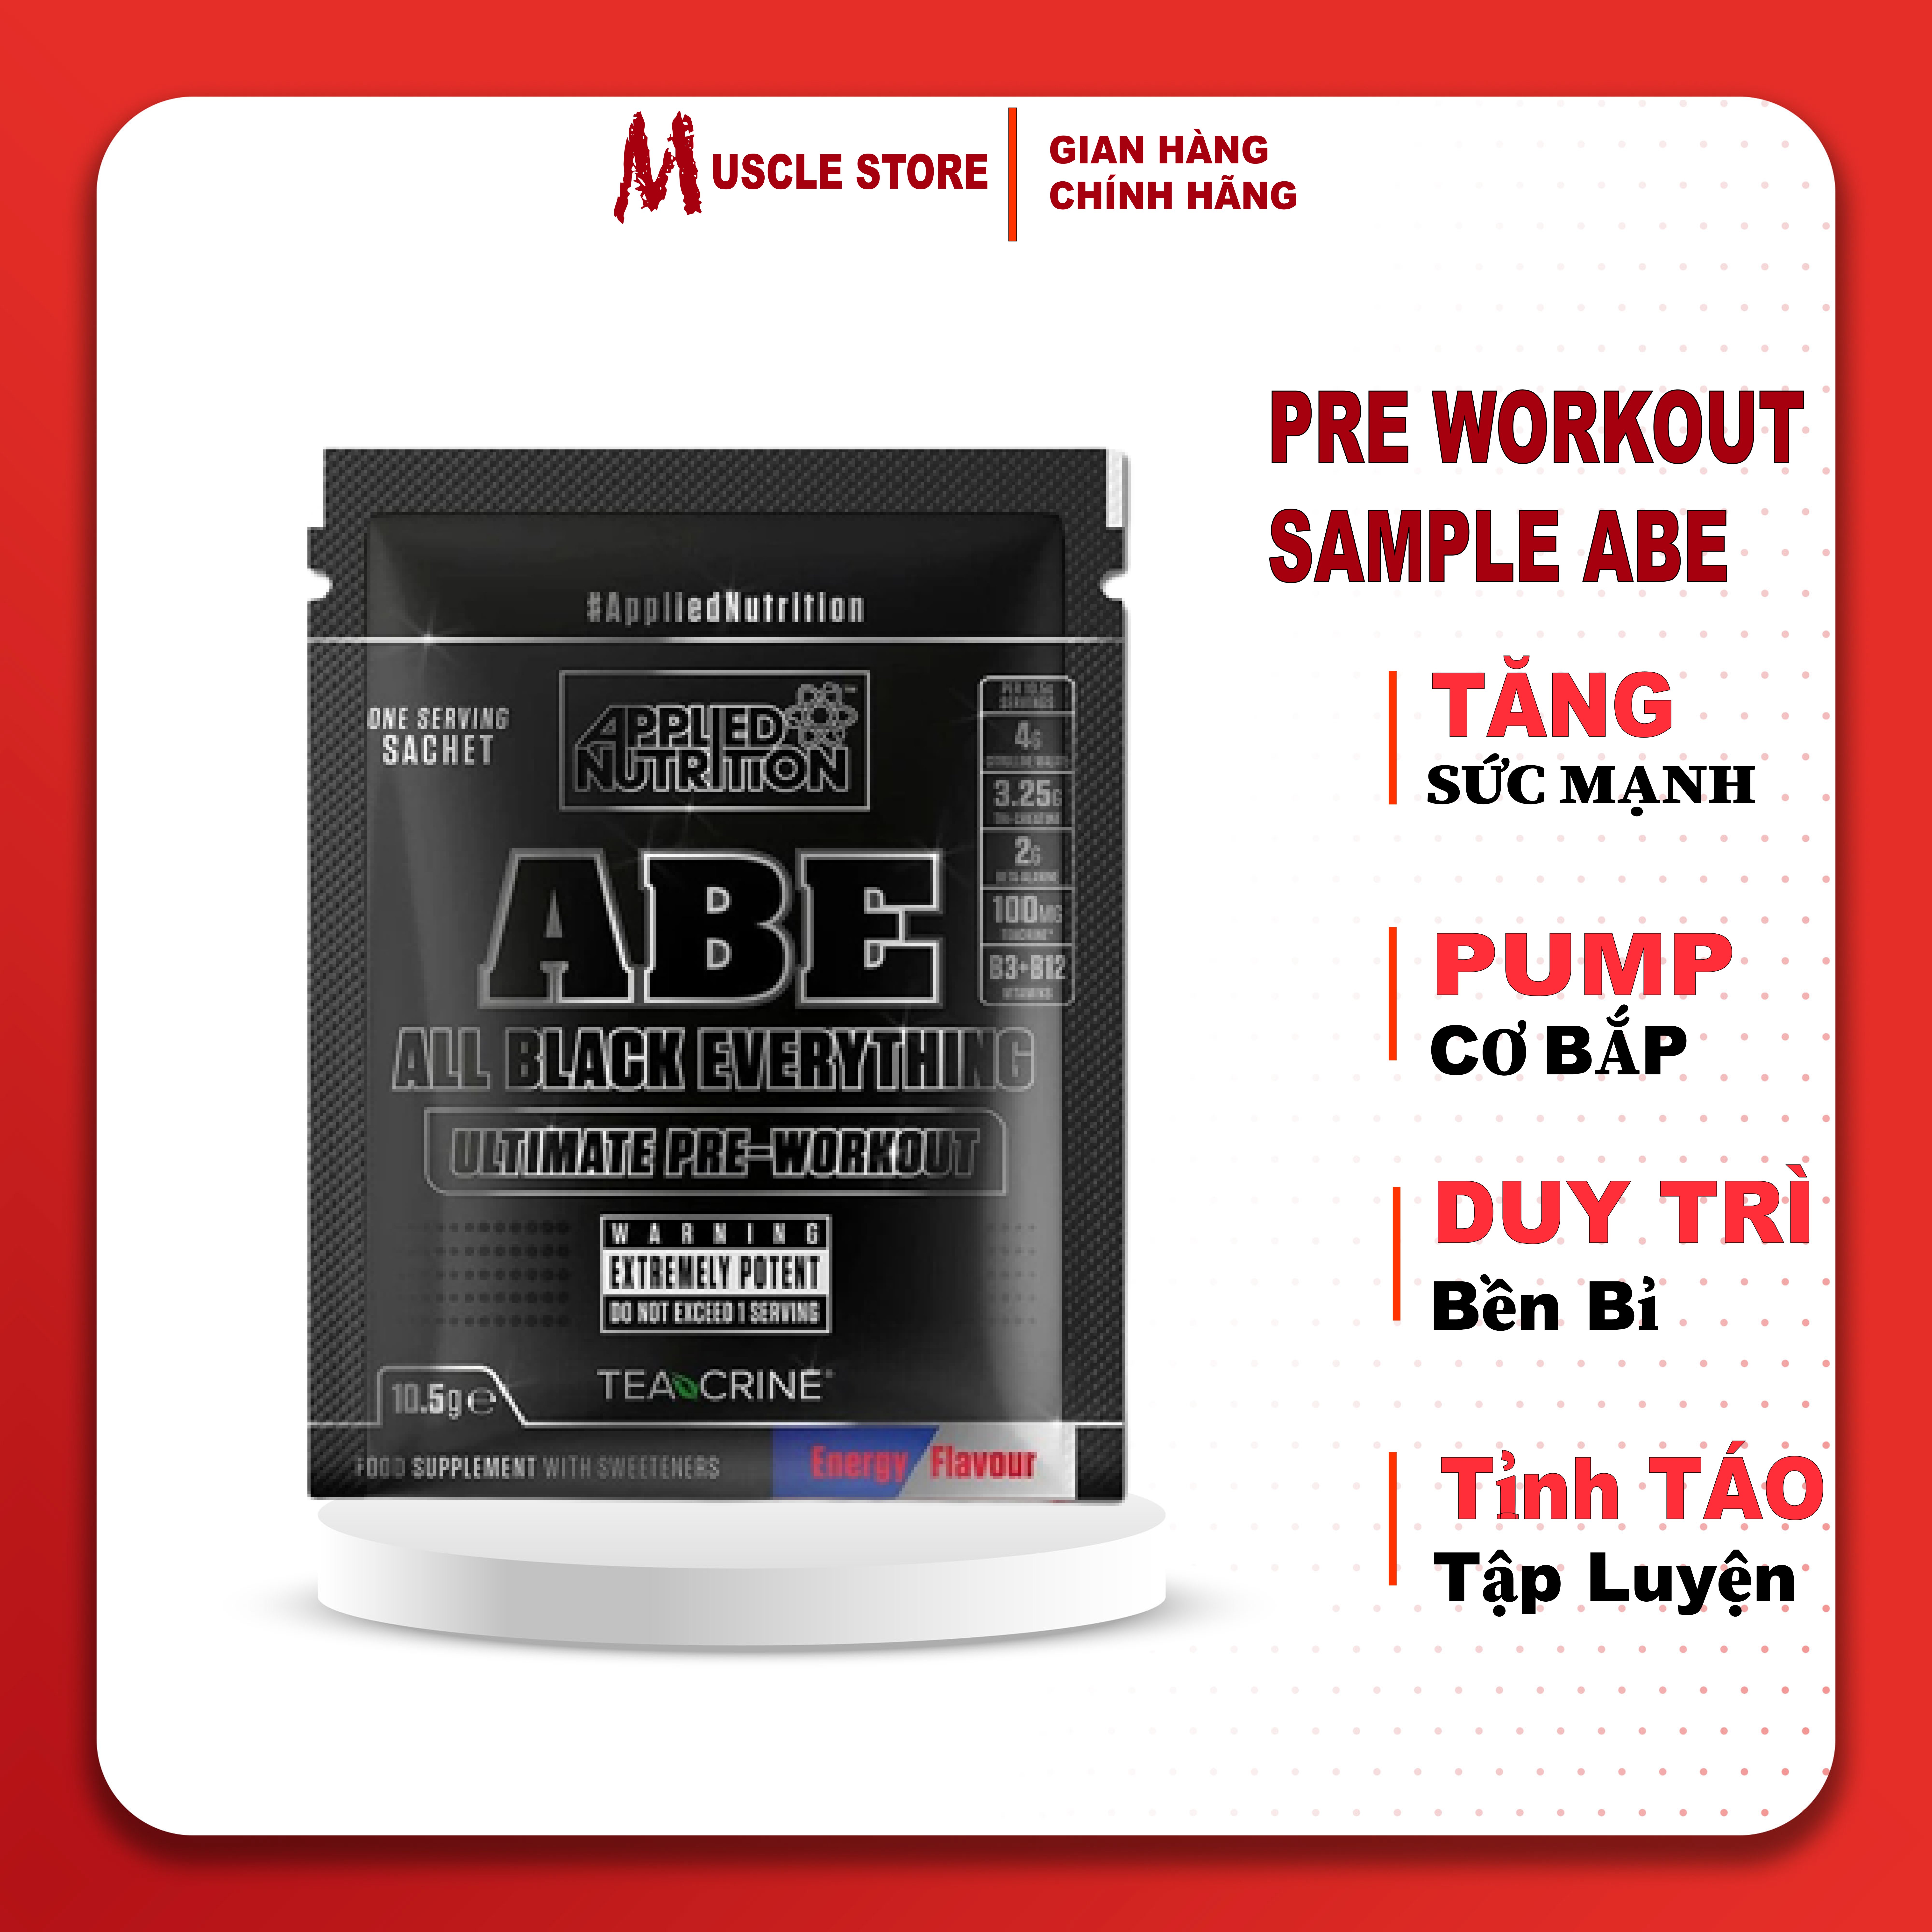 Sample ABE - Applied Nutrition, Gói dùng thử pre workout ABE, 1 Lần dùng hỗ trợ tăng sức mạnh, Tăng sức bền, Pump cơ bắp